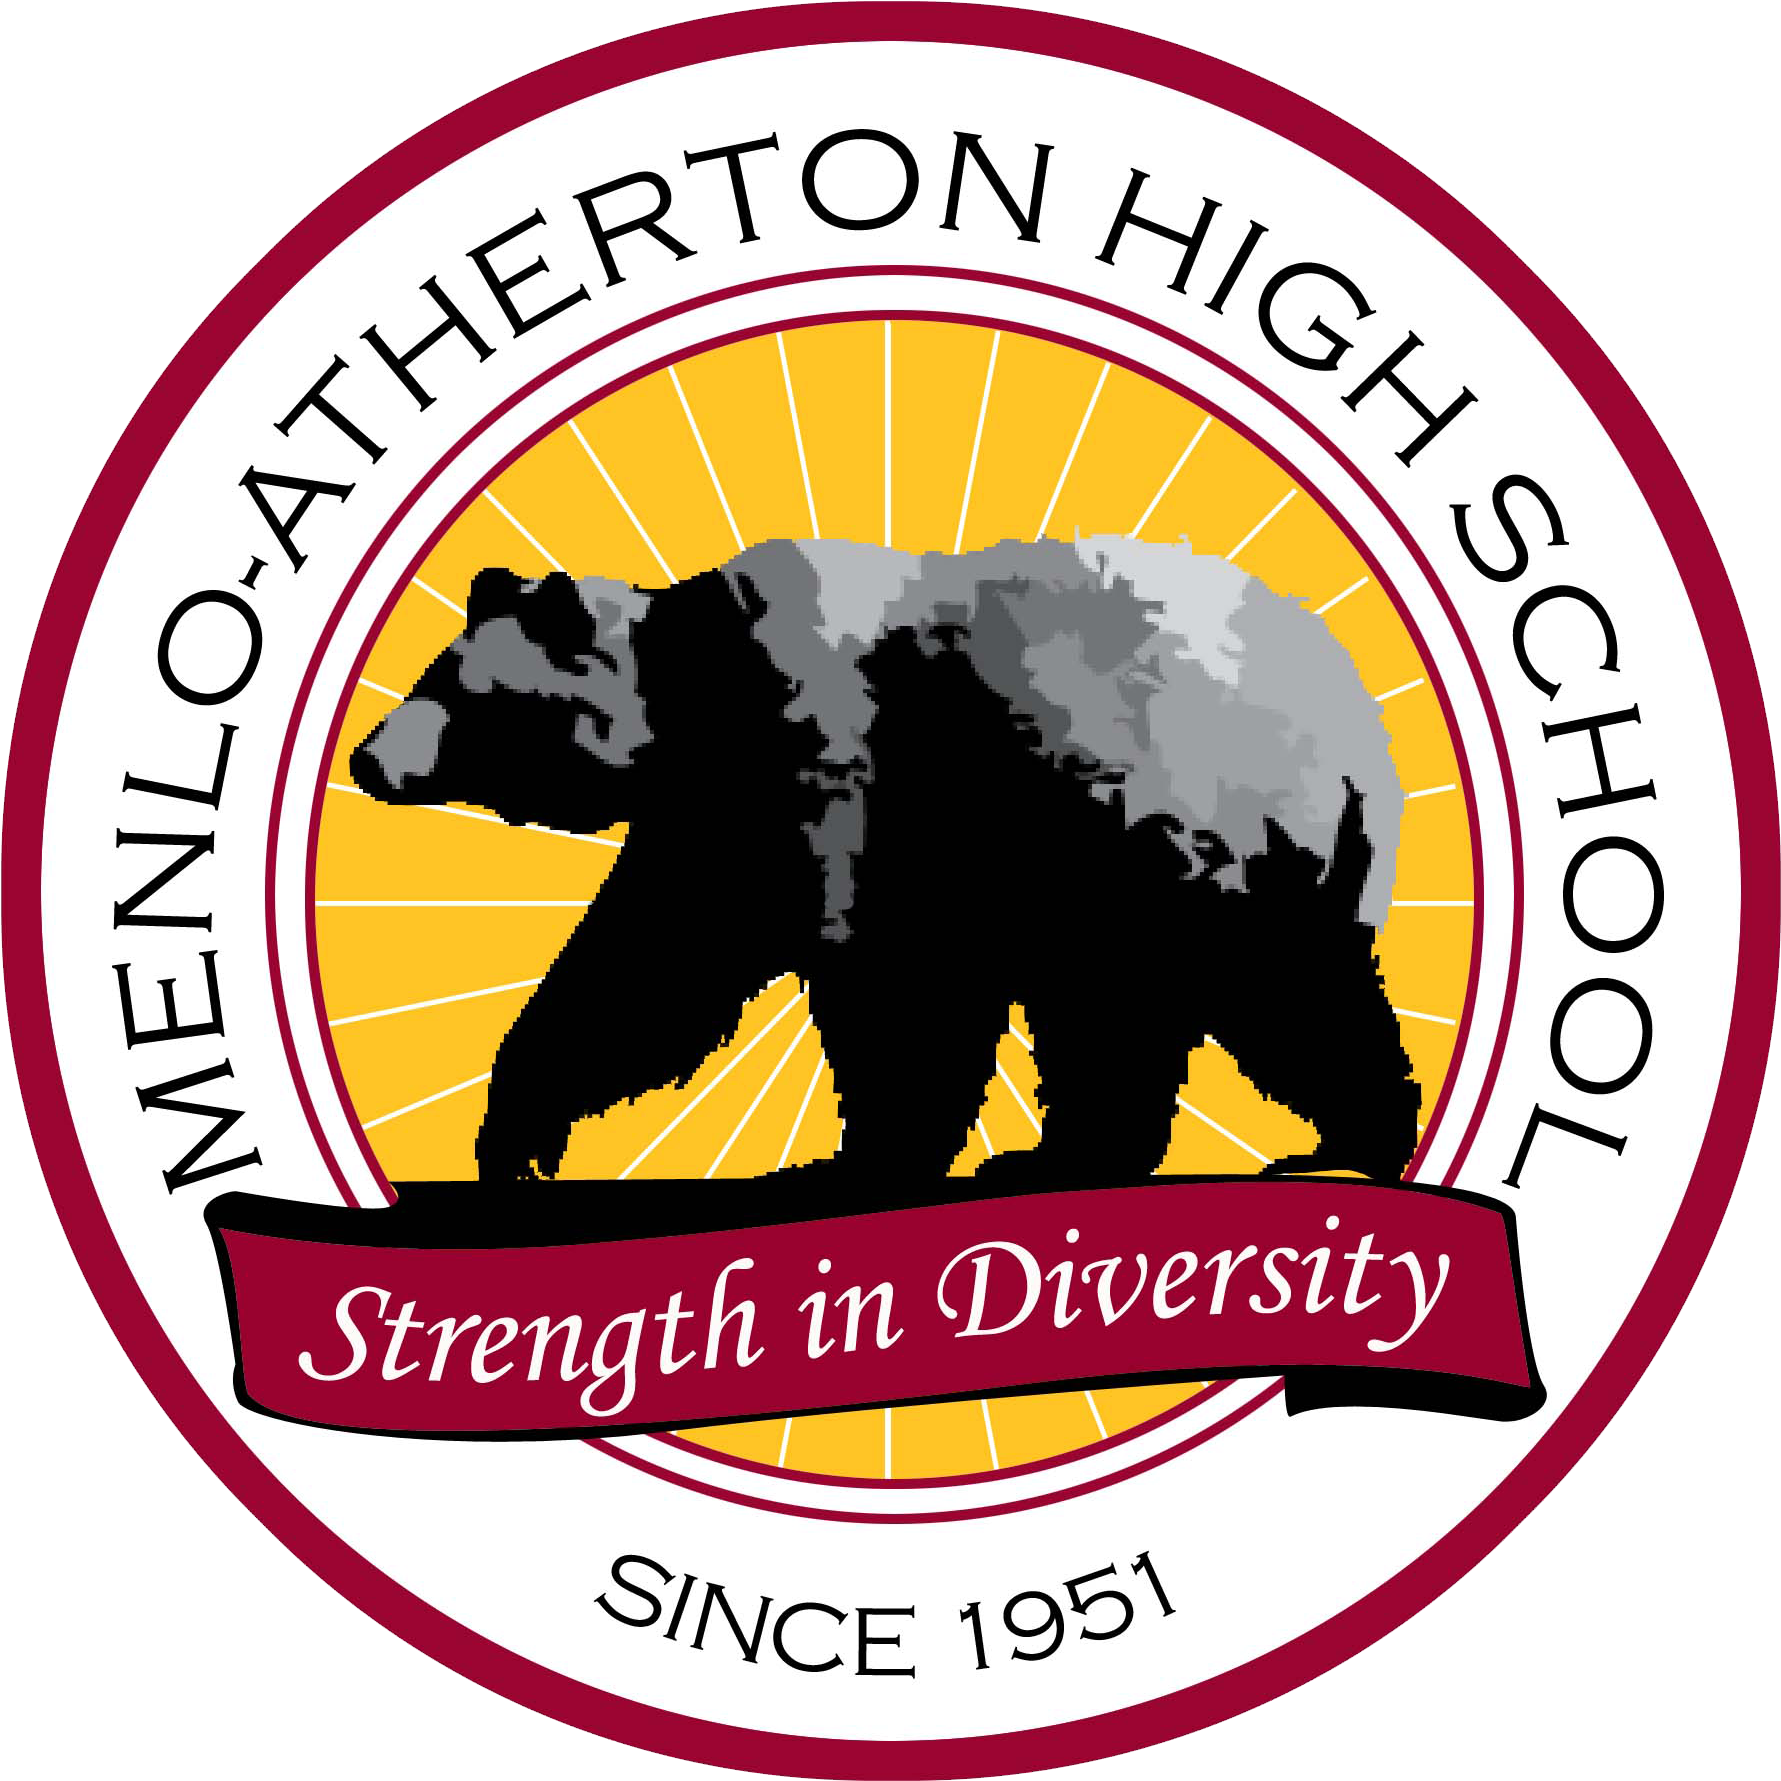 School Logo Image - Menlo Atherton High School (1800x1800)